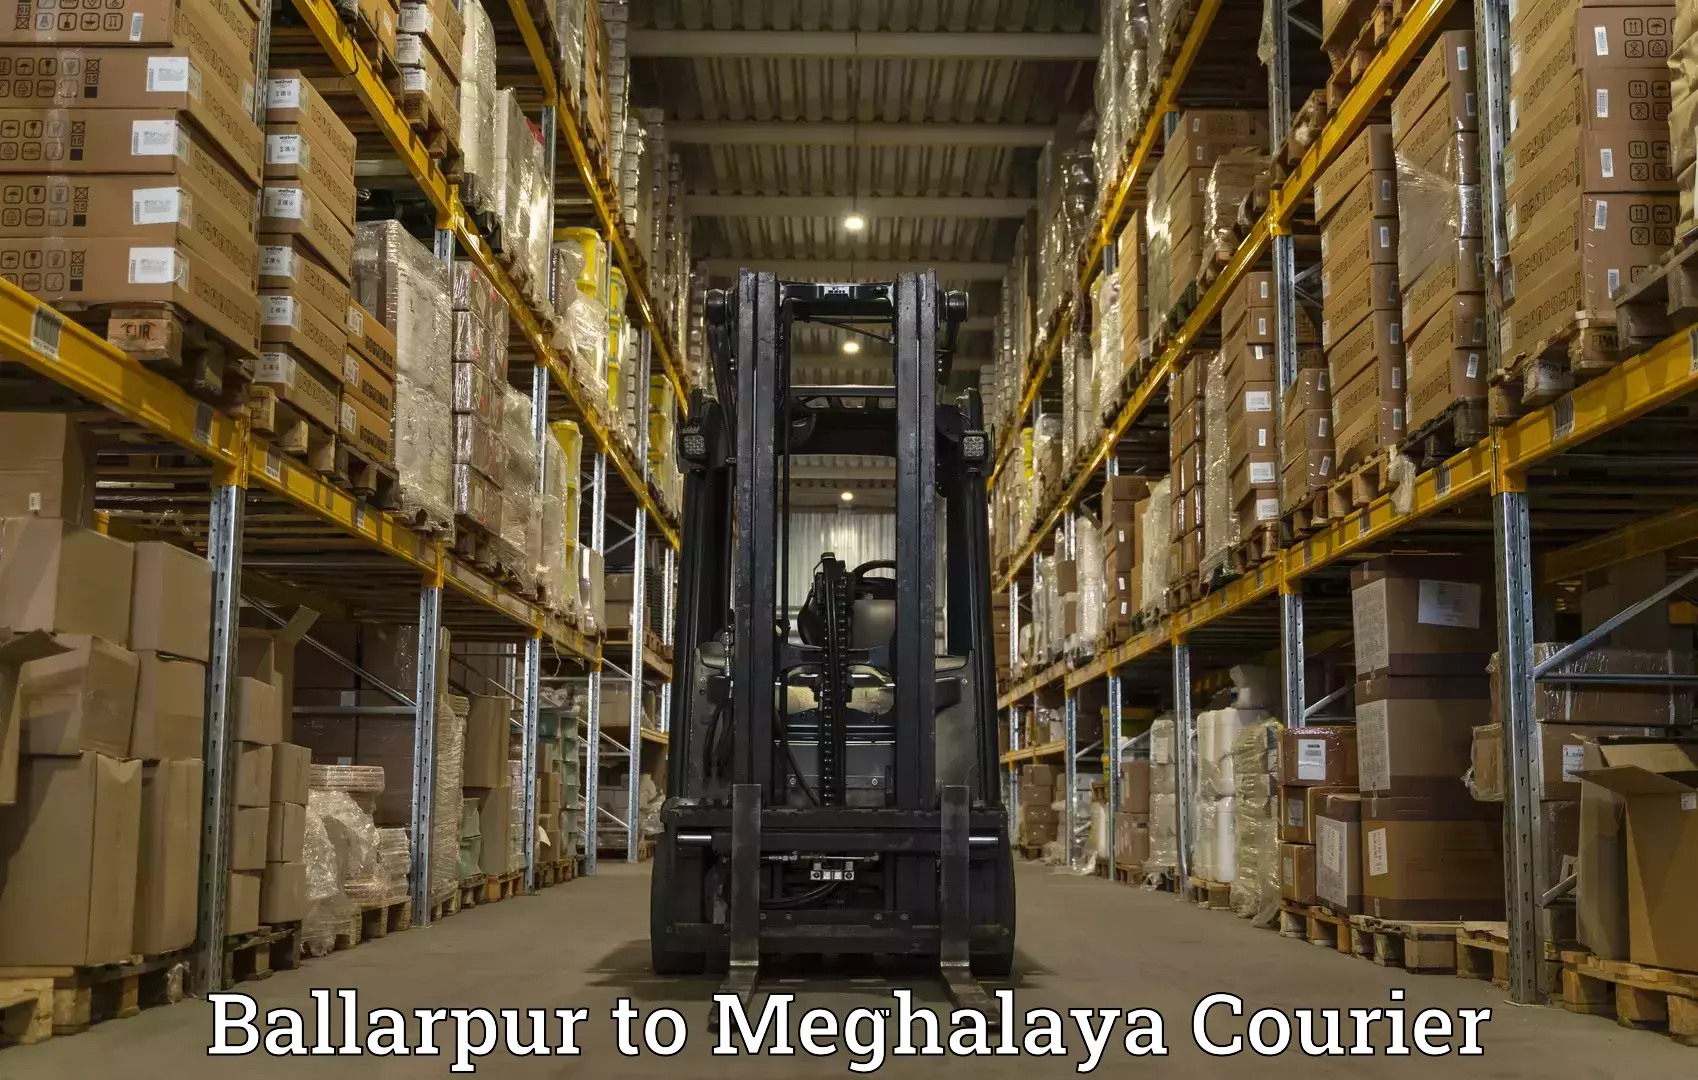 Premium courier solutions Ballarpur to Shillong